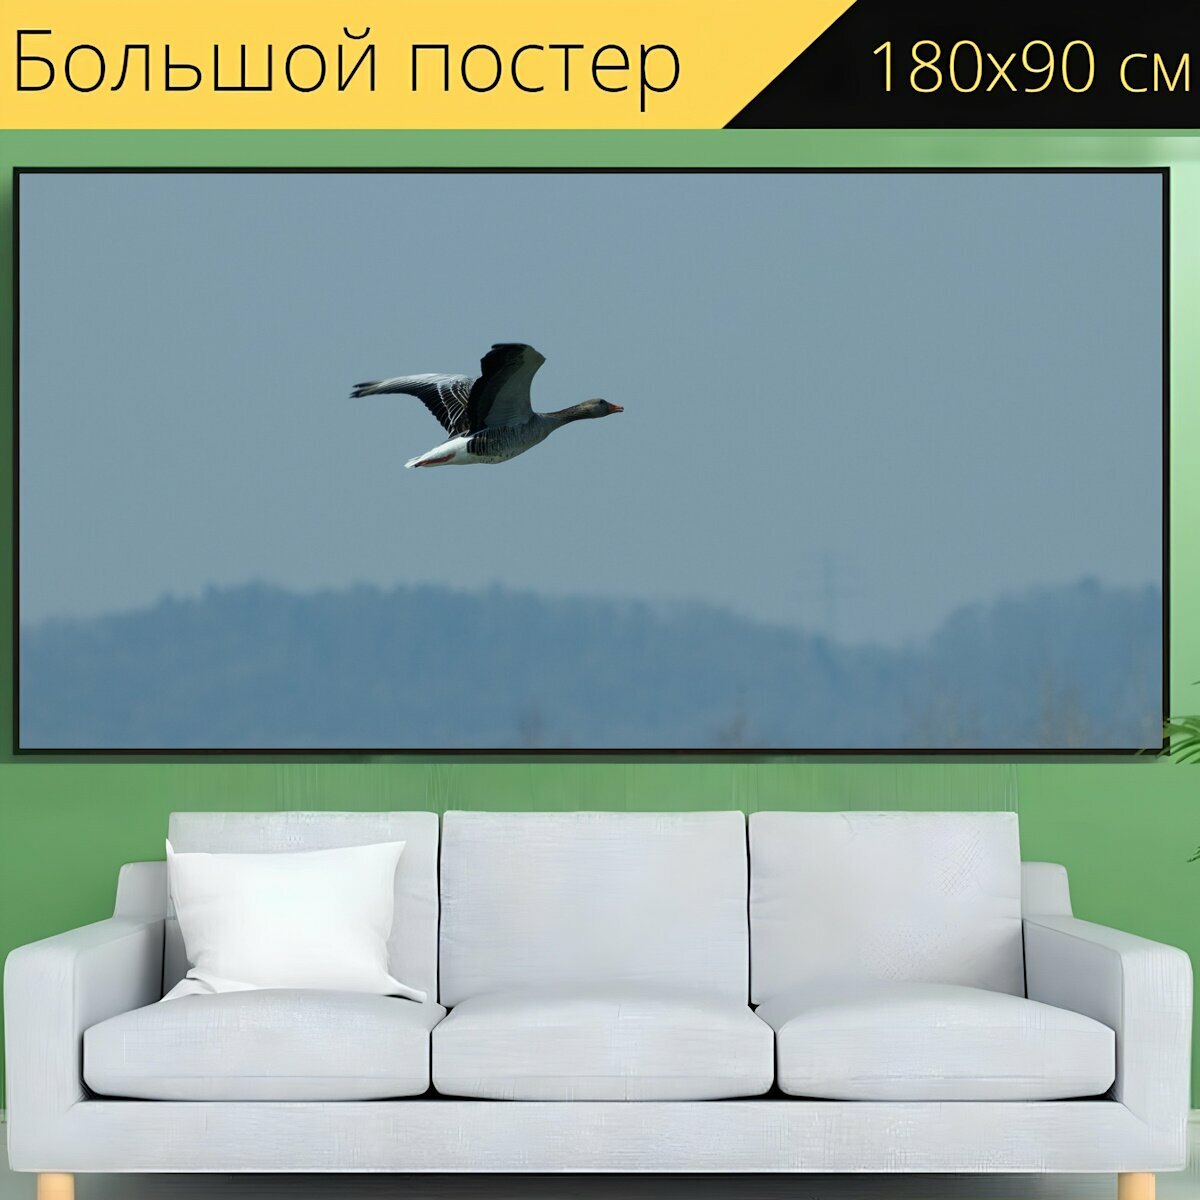 Большой постер "Дикий гусь, водоплавающая птица, серый гусь" 180 x 90 см. для интерьера